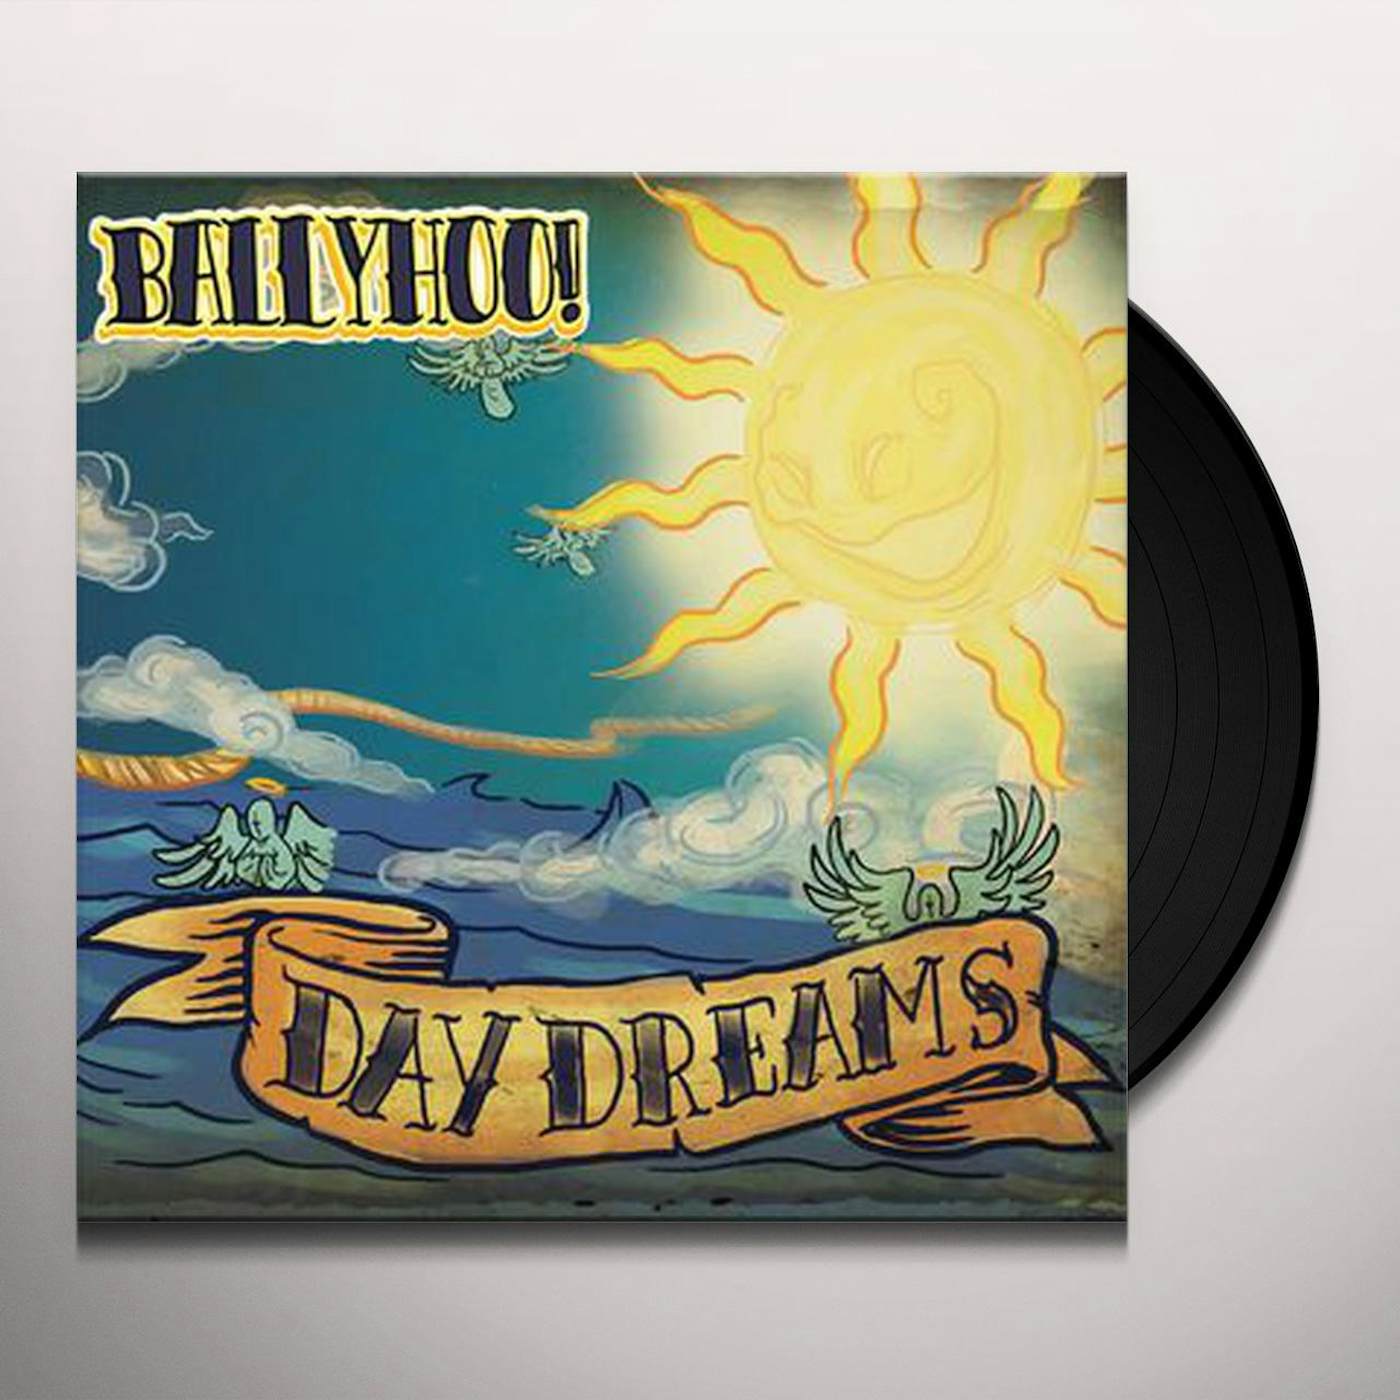 Ballyhoo! Daydreams Vinyl Record